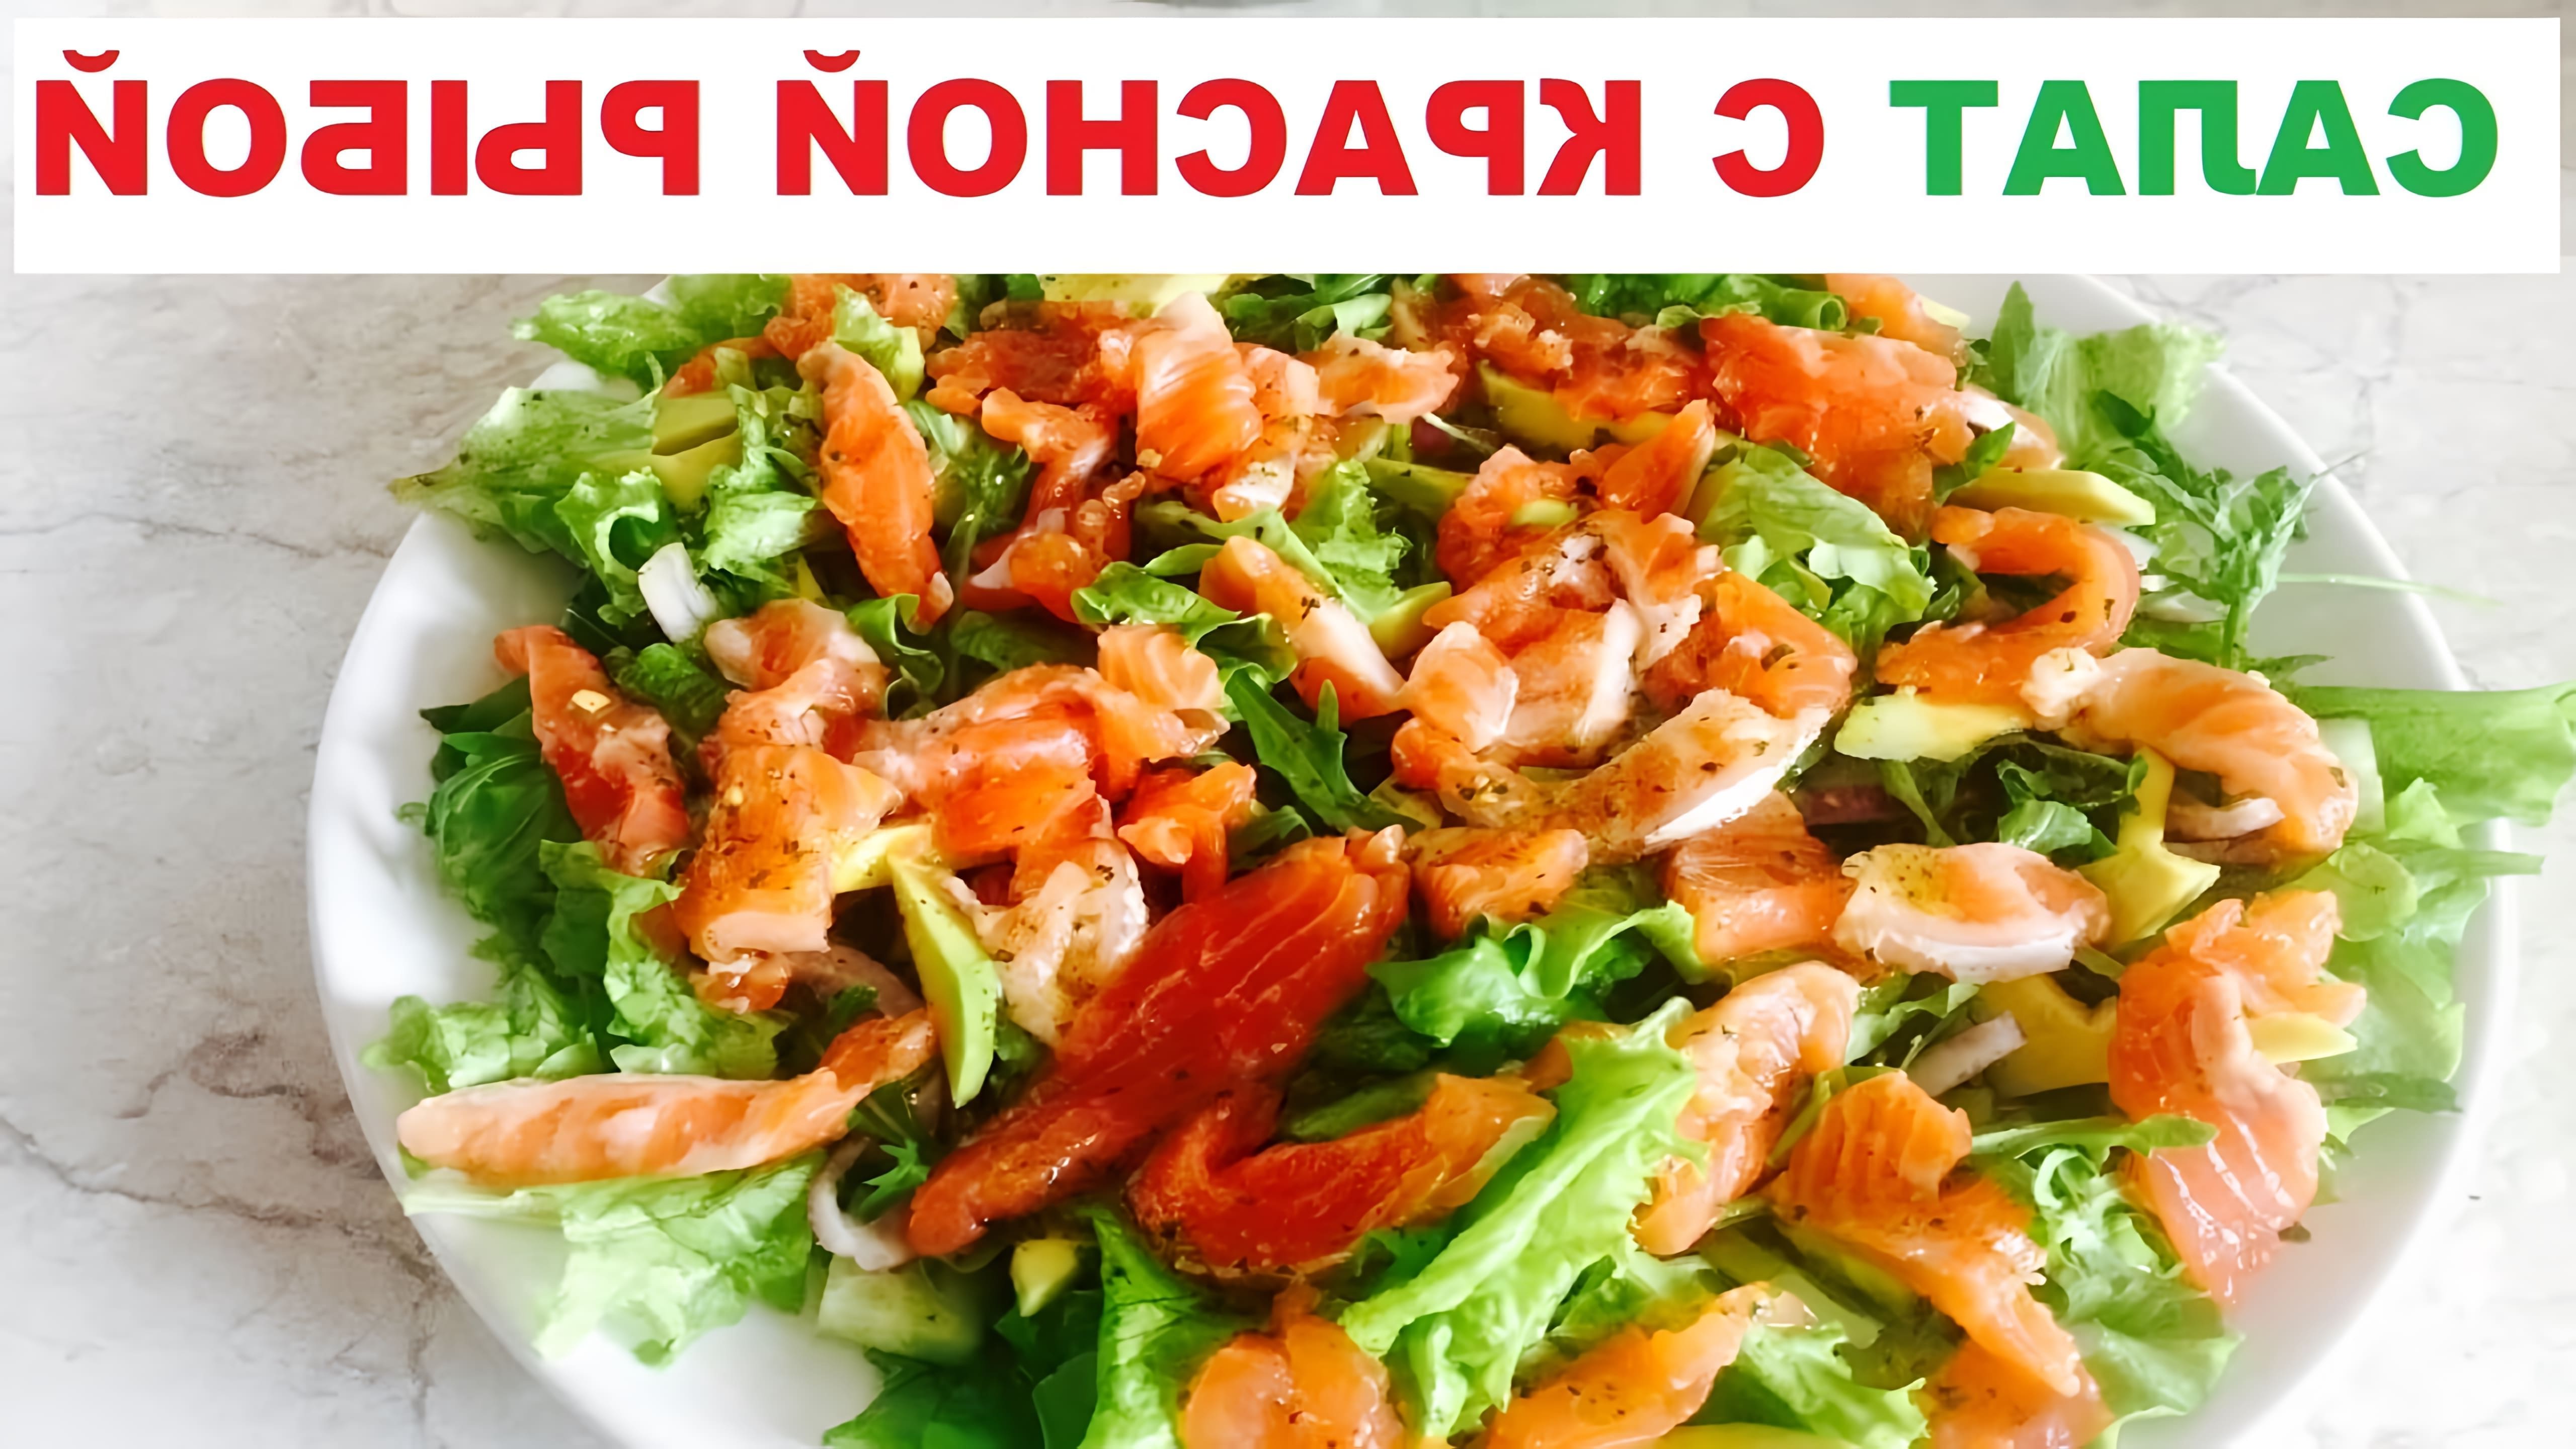 Салат с красной рыбой - это вкусное и полезное блюдо, которое можно приготовить в домашних условиях